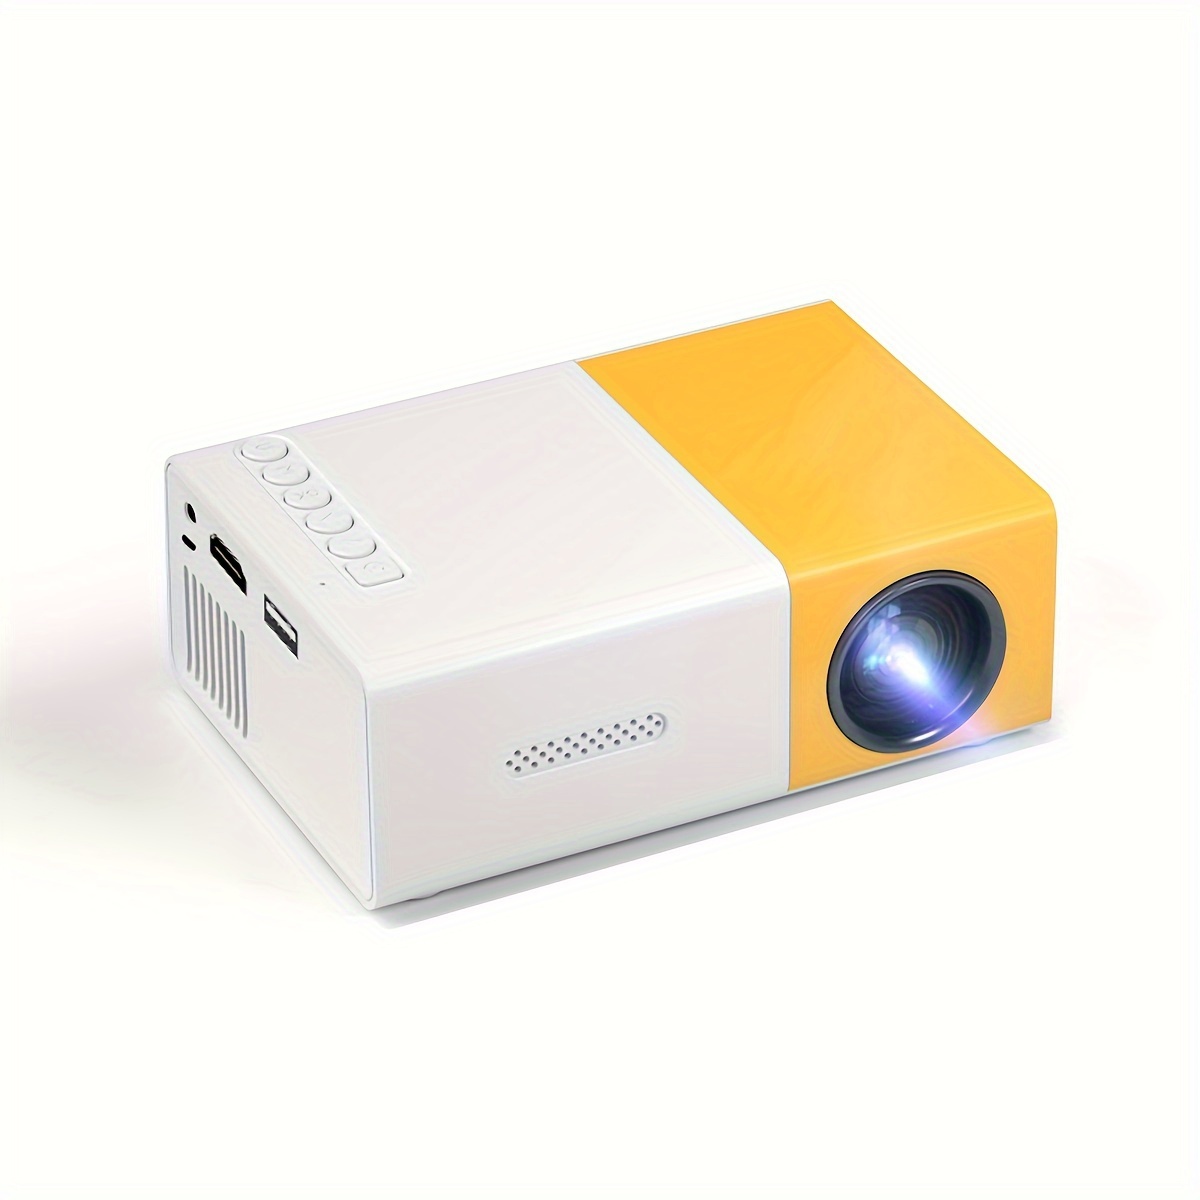 Experimenta cine en casa con nuestro mini proyector. ¡Haz clic ahora! -  QuickEasy Colombia